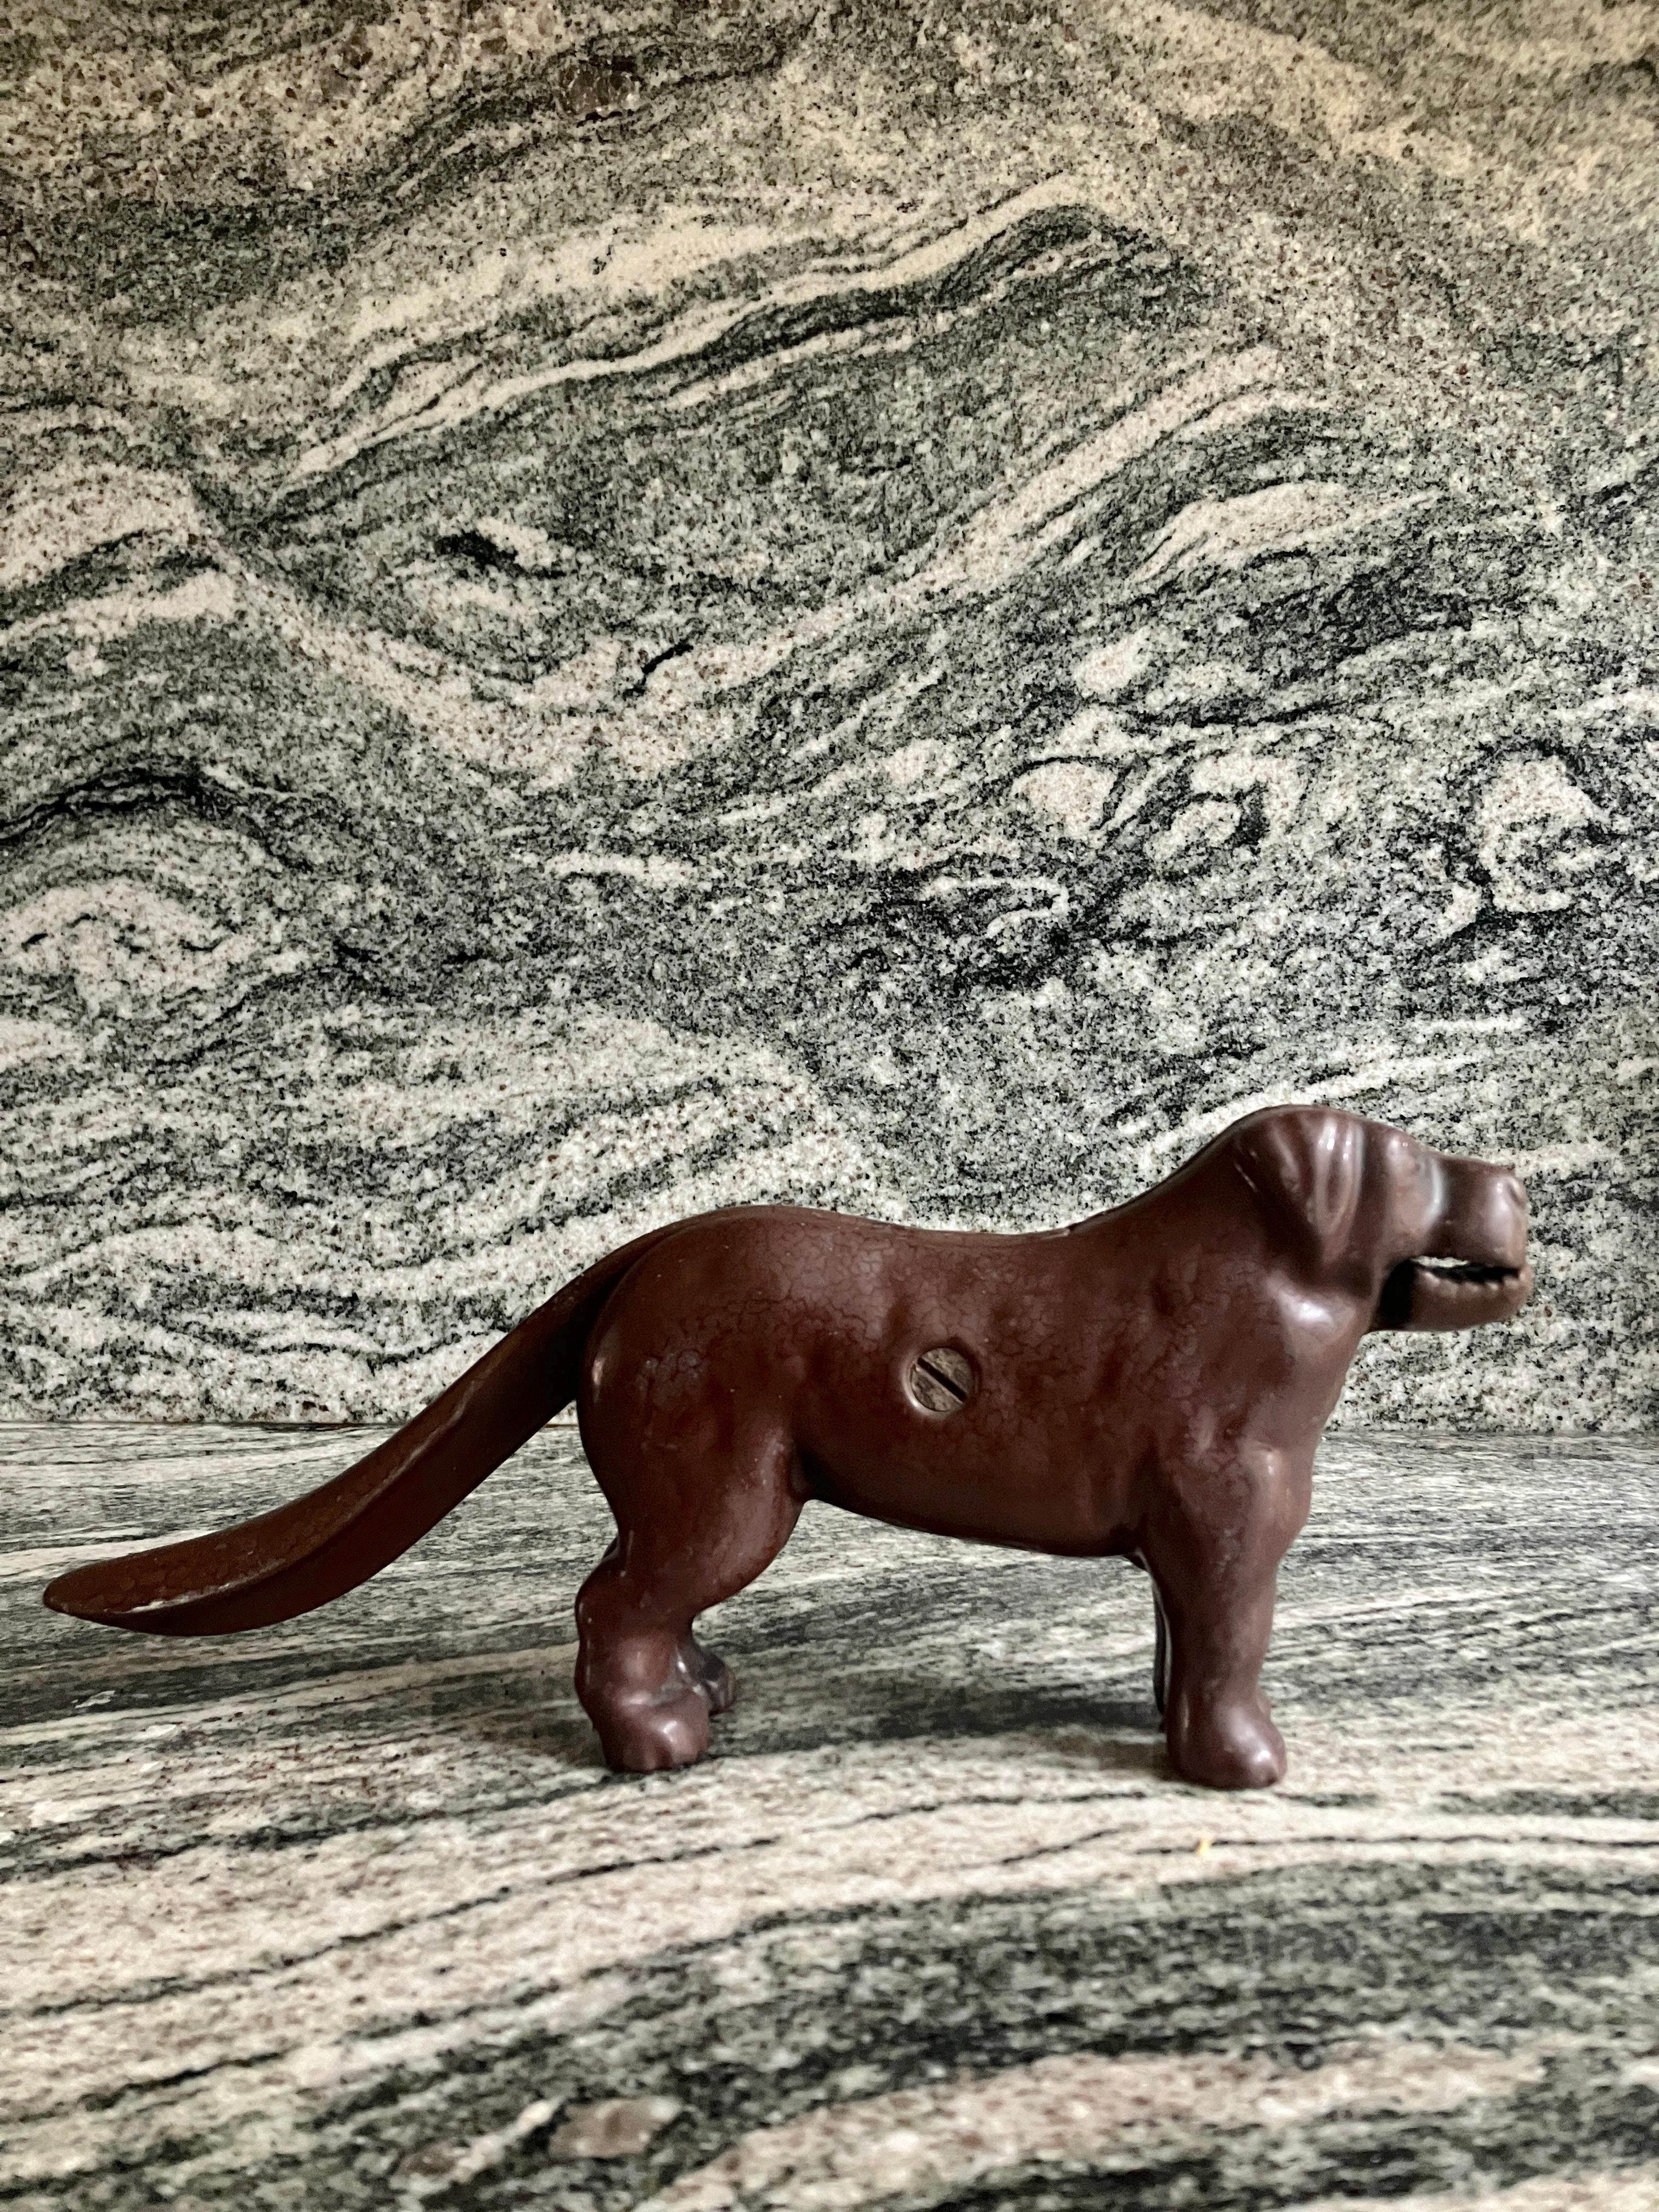 Magnifique casse-noix pour chien en fonte datant de la fin de l'époque victorienne et provenant d'Angleterre. Le casse-noix antique se présente sous la forme d'un beau chien.
Il s'agit d'un article très lourd, fabriqué en fonte et émaillé en brun.